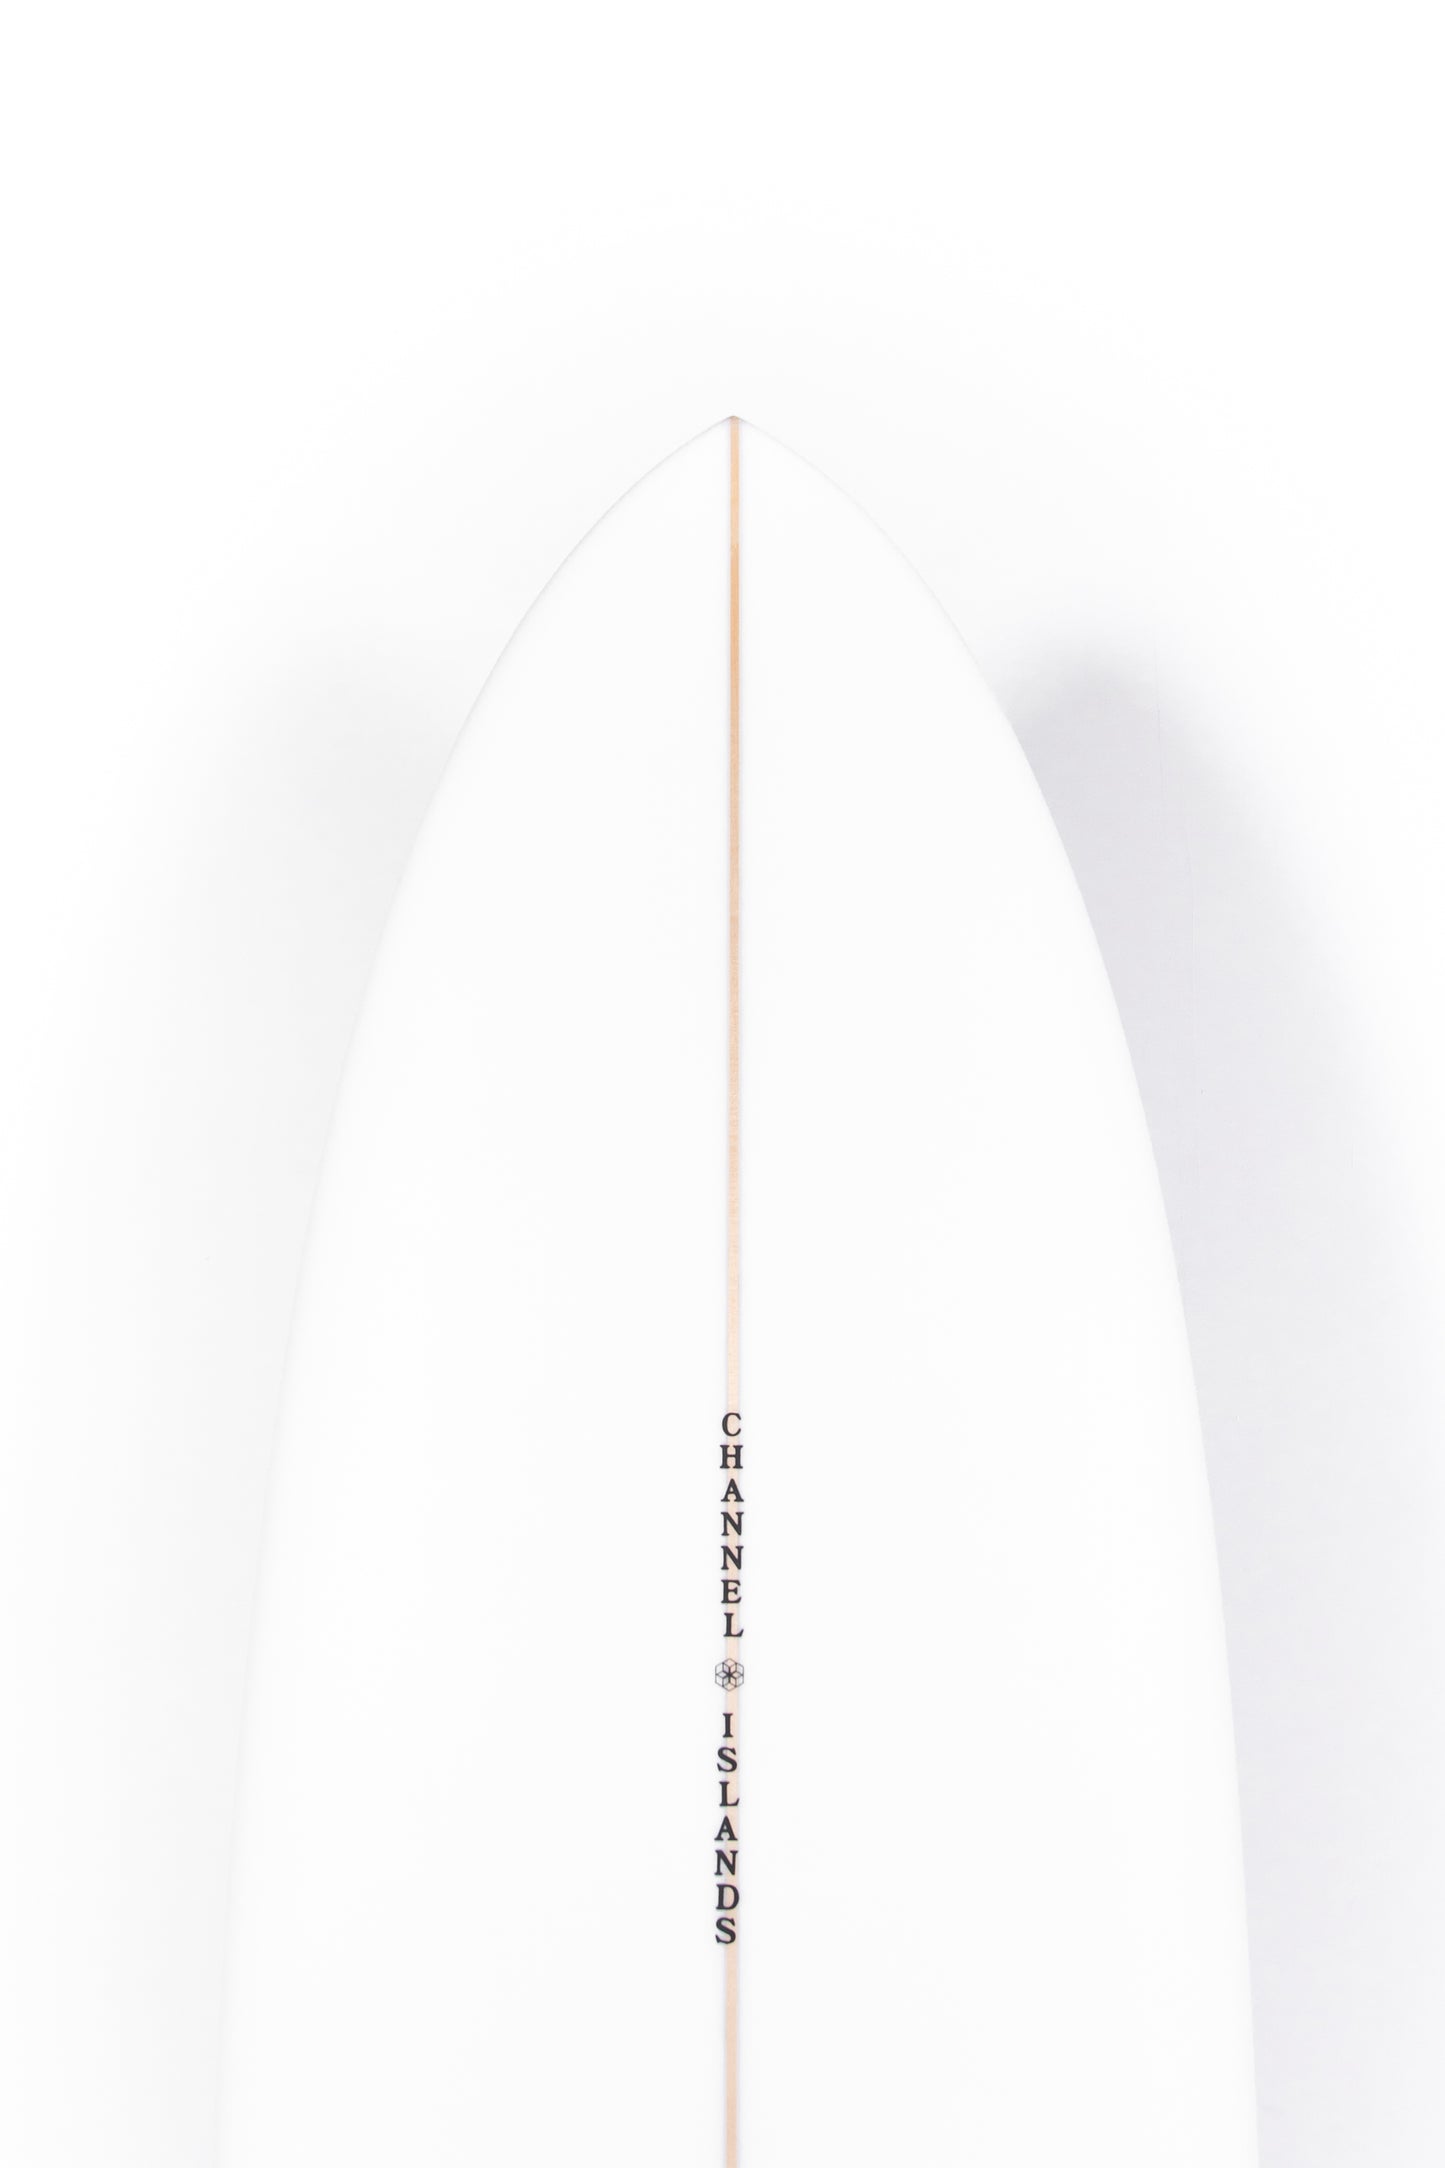 
                  
                    Pukas Surf Shop - Channel Islands - CI MID - 7'0" x 21 1/8 x 2 3/4 - 44,9L - CI32555
                  
                